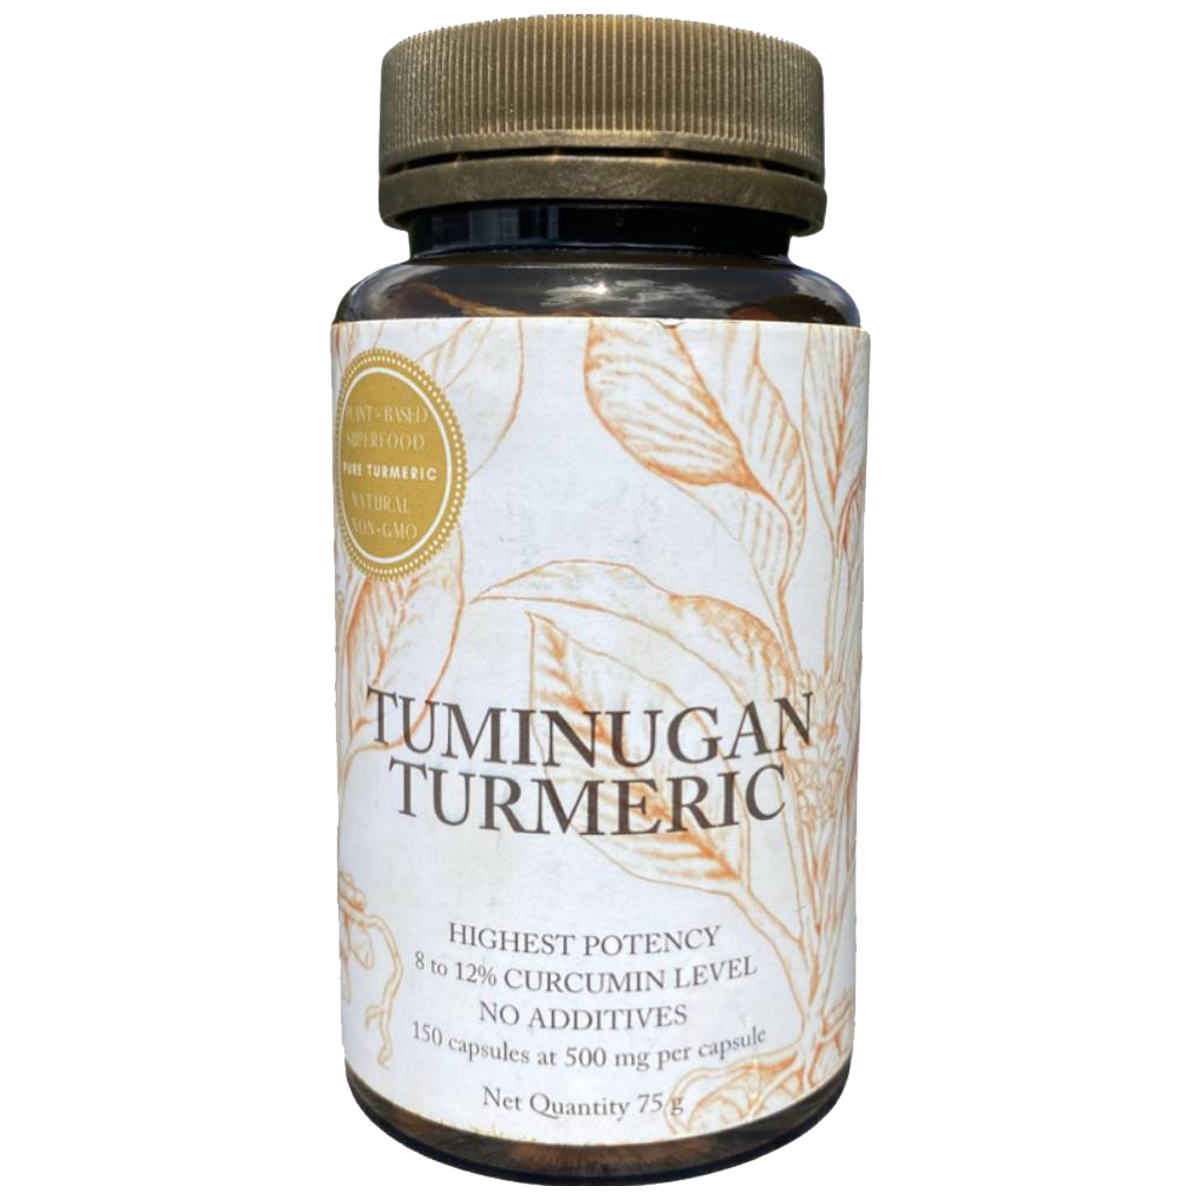 Tuminugan Turmeric 150 capsules